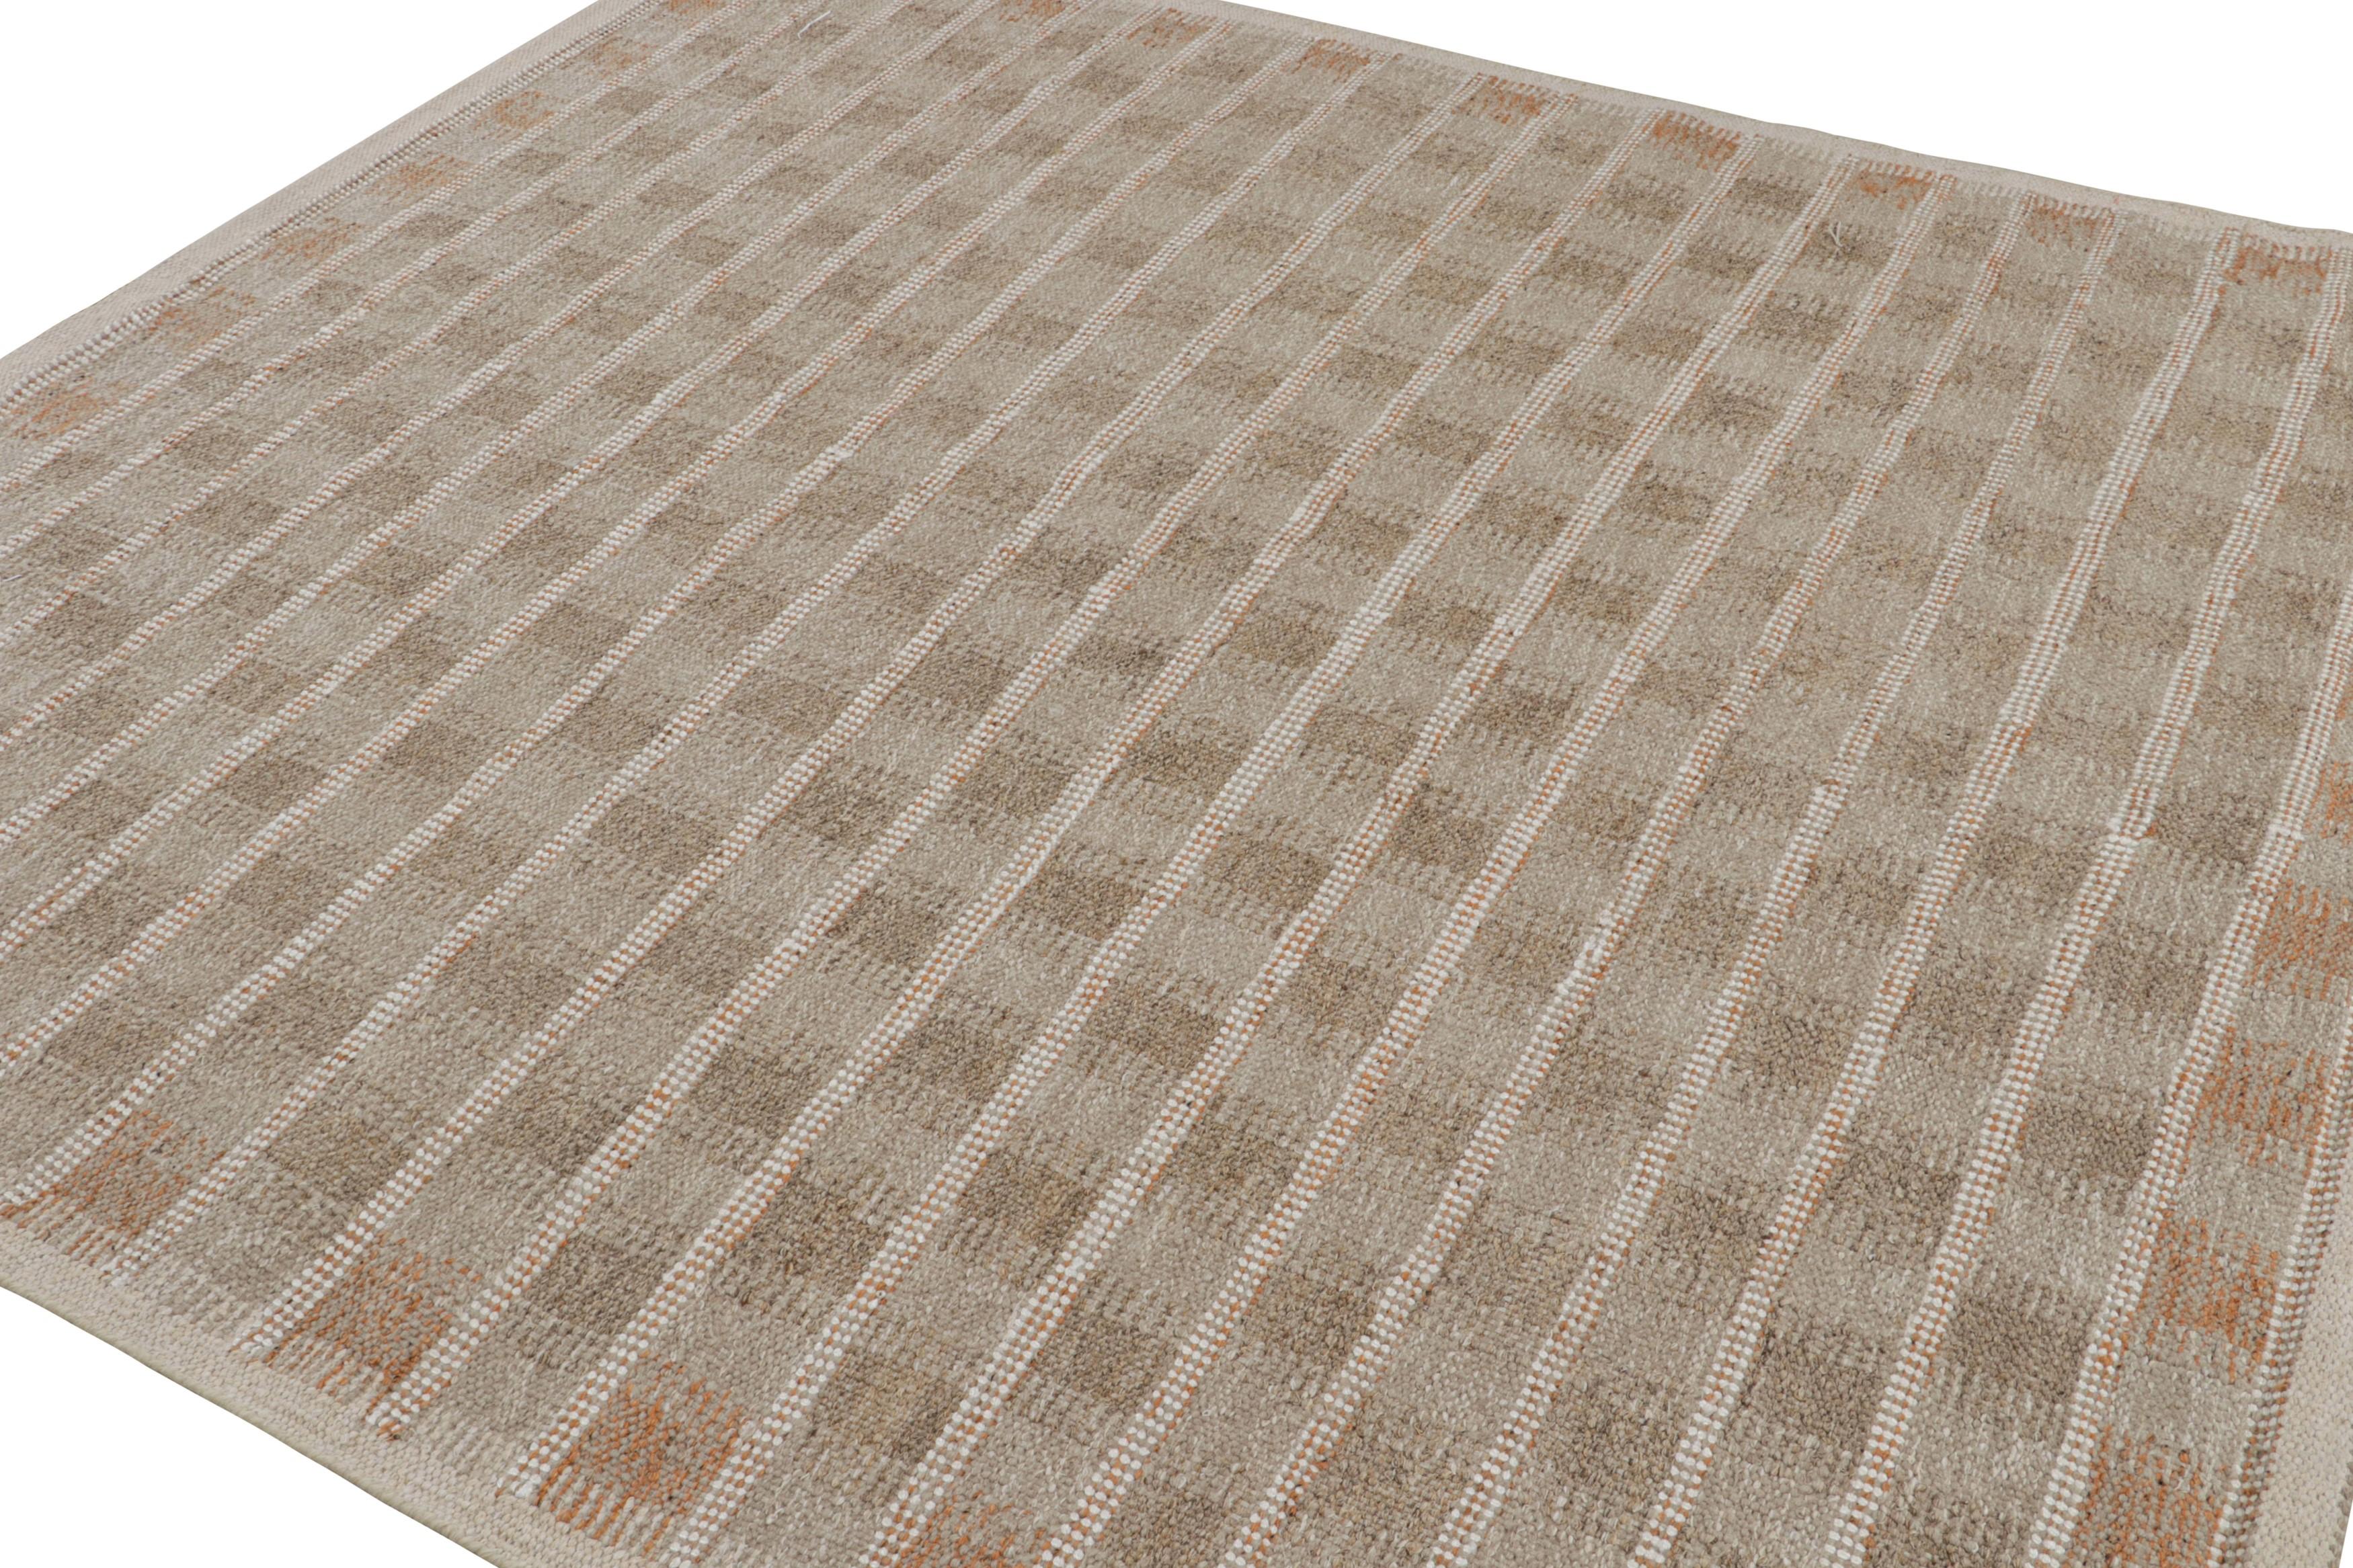 Tissé à la main en aloès avec une texture de tissage plat, ce tapis scandinave carré 8x8 est issu de notre ligne de tapis suédois 